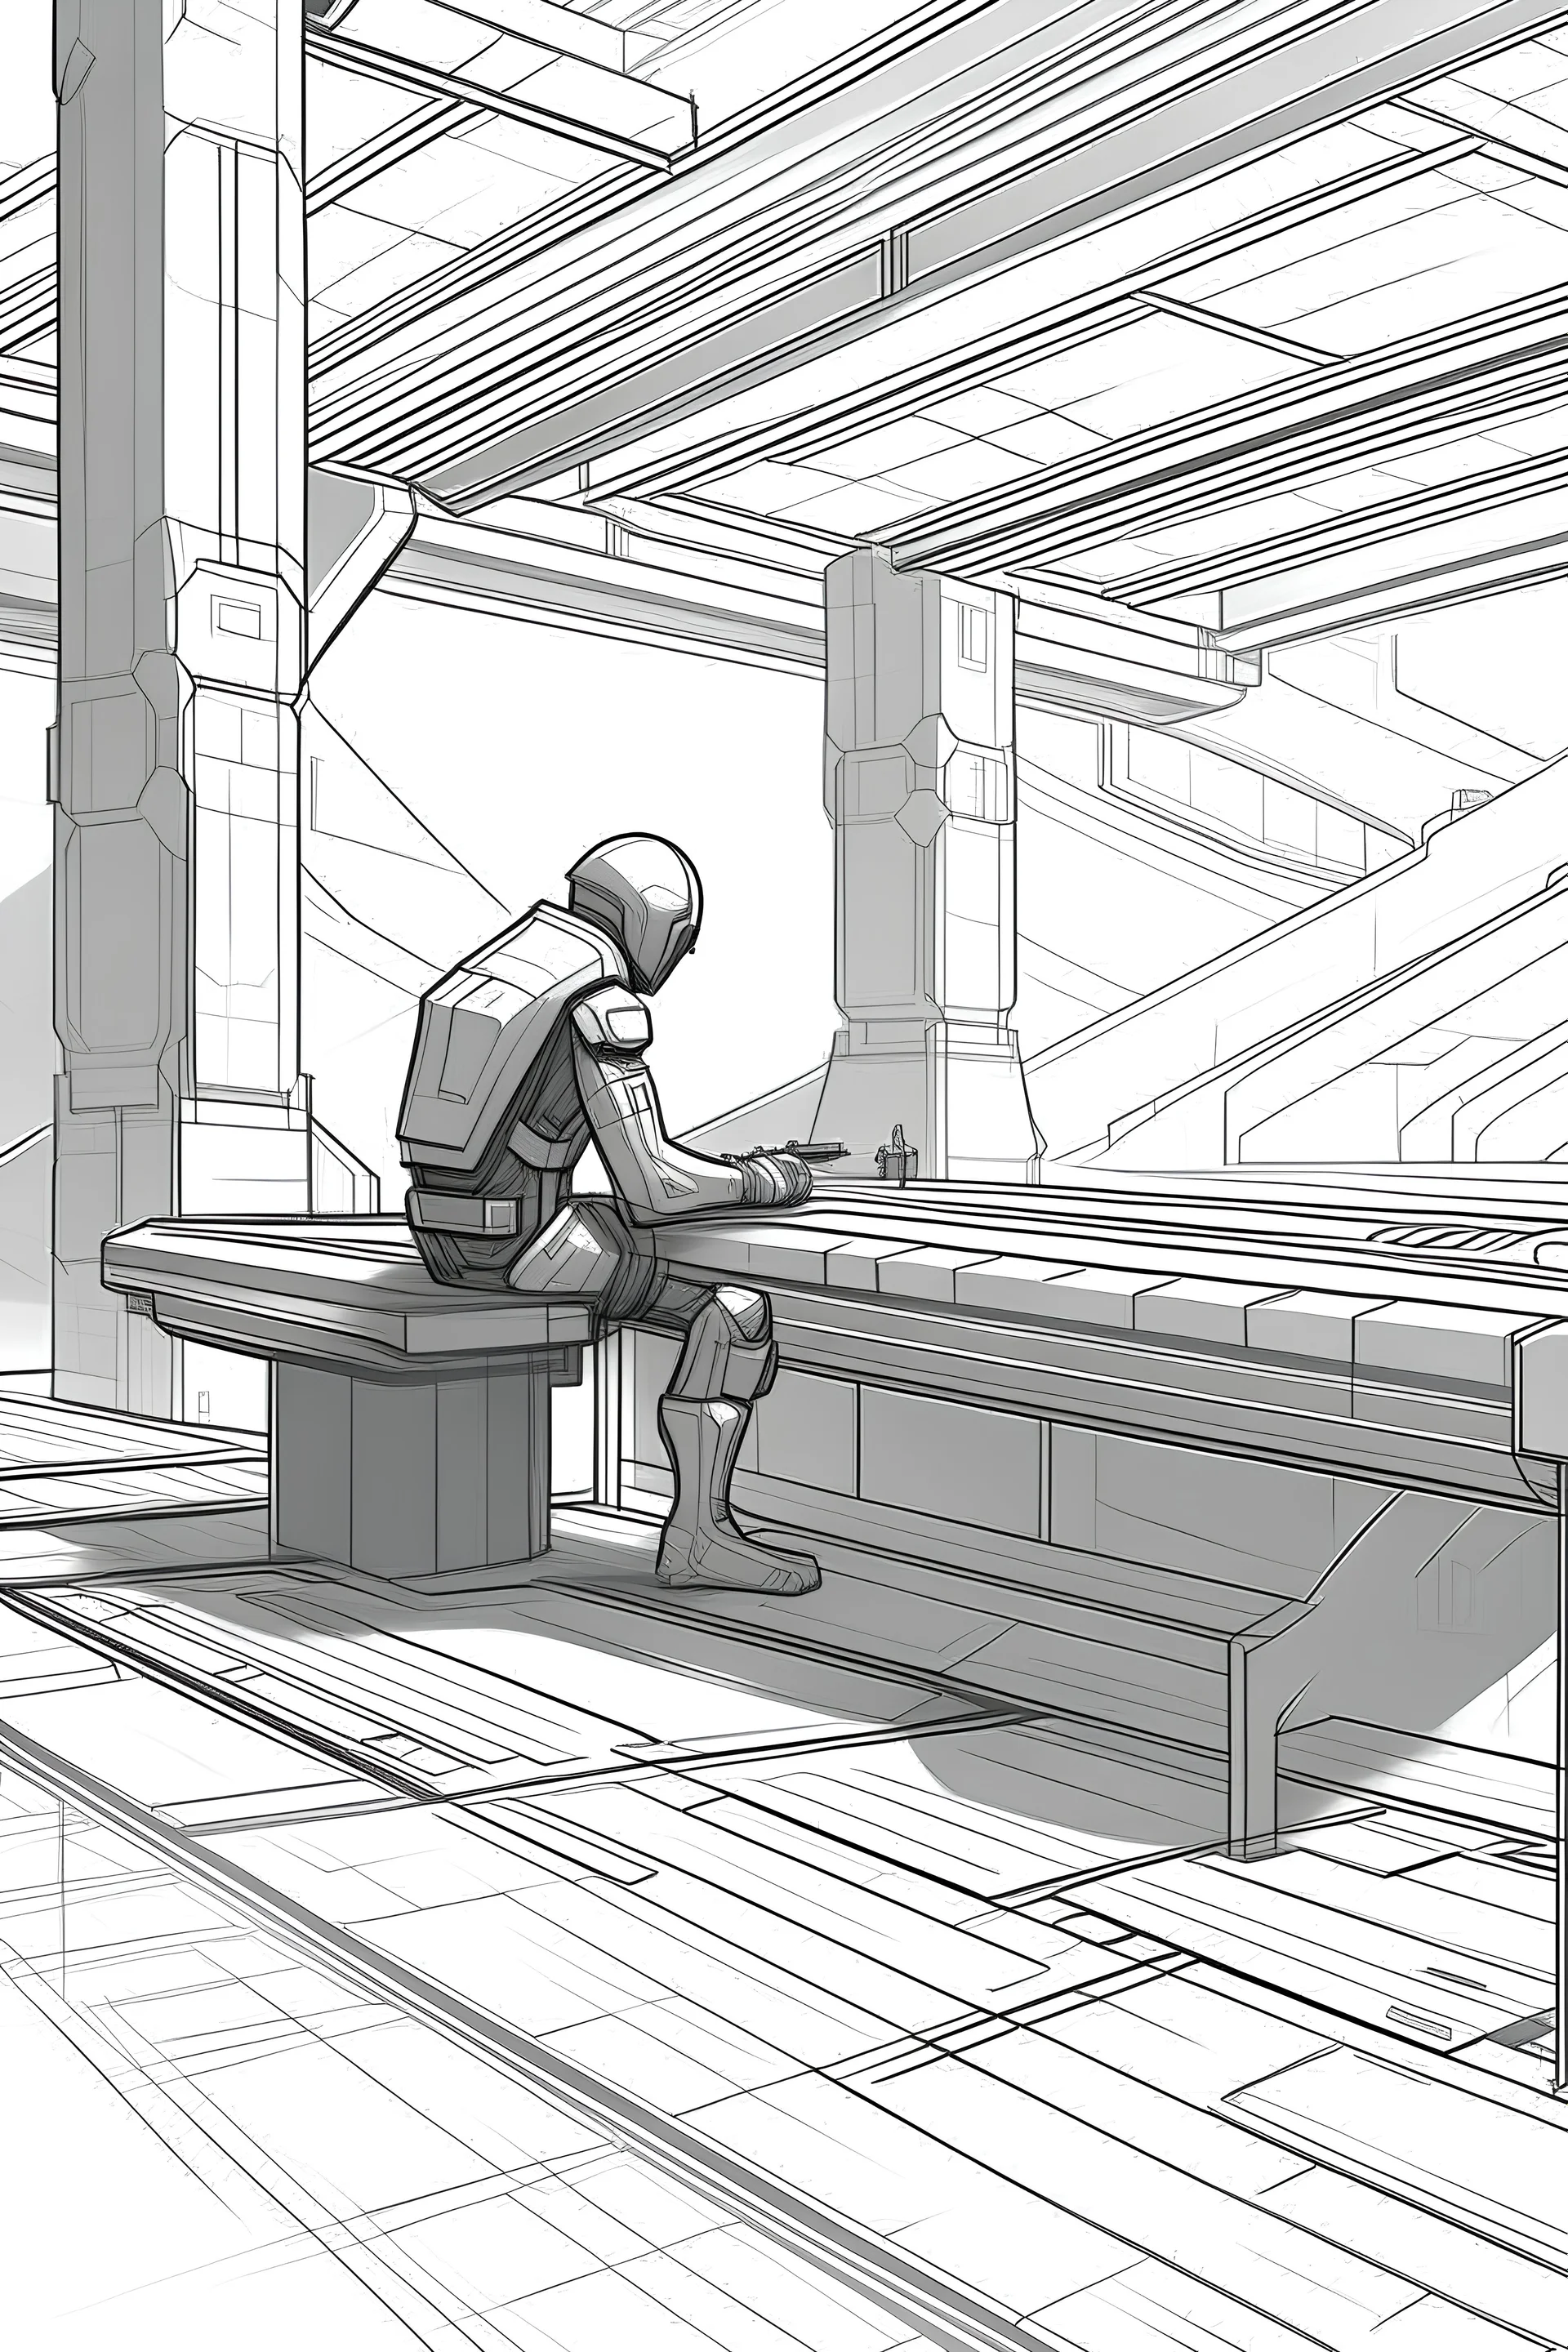 Draw a futuristic carpenter's level